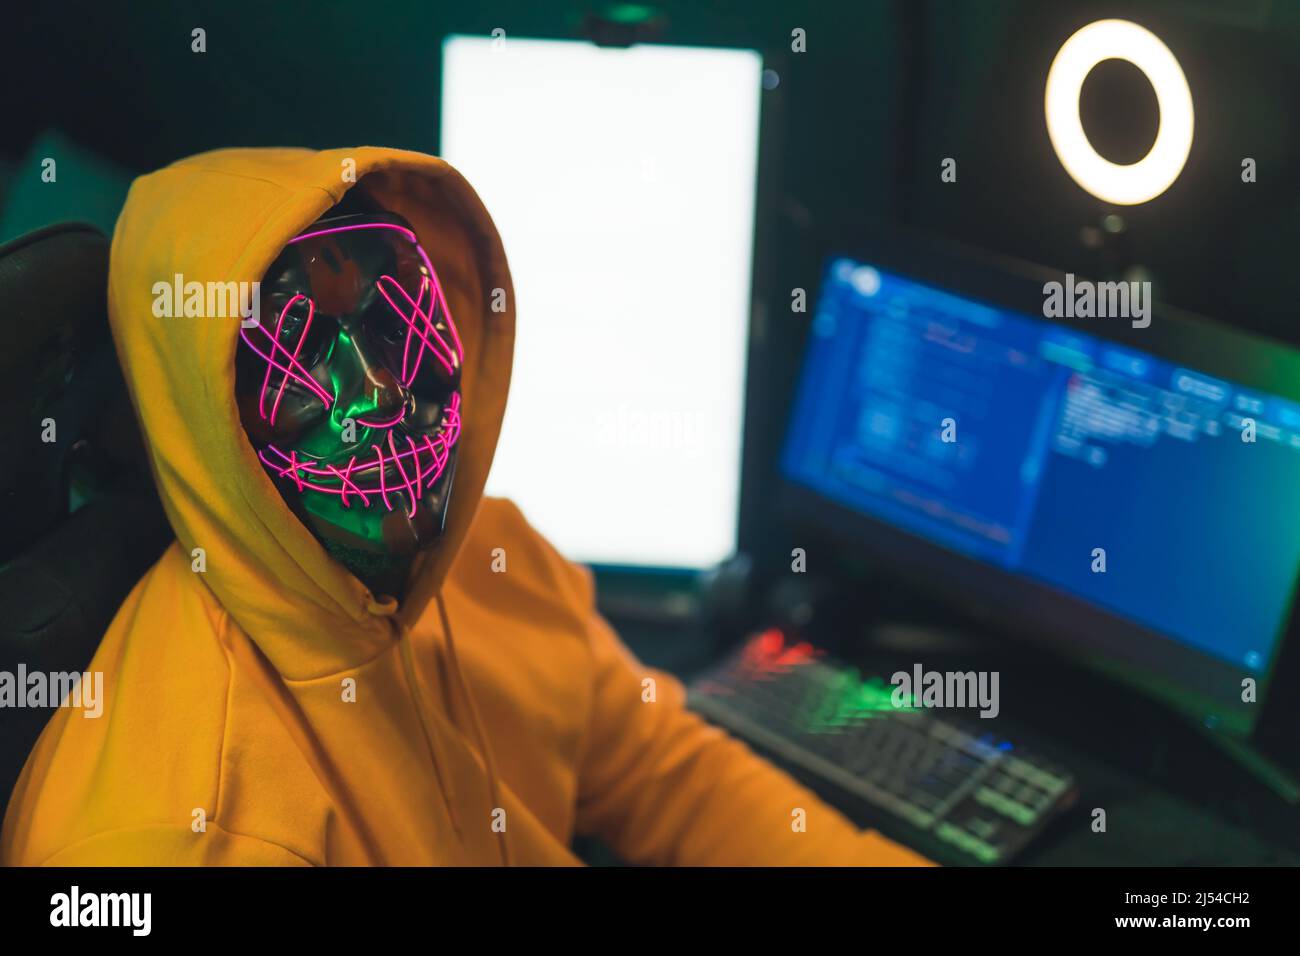 Anonymes Internet-Identitätskonzept. Person in einem gelben Hoodie vor einem Programmiercomputer mit gruselig beleuchteter Neonmaske und Blick auf die Kamera. Hochwertige Fotos Stockfoto